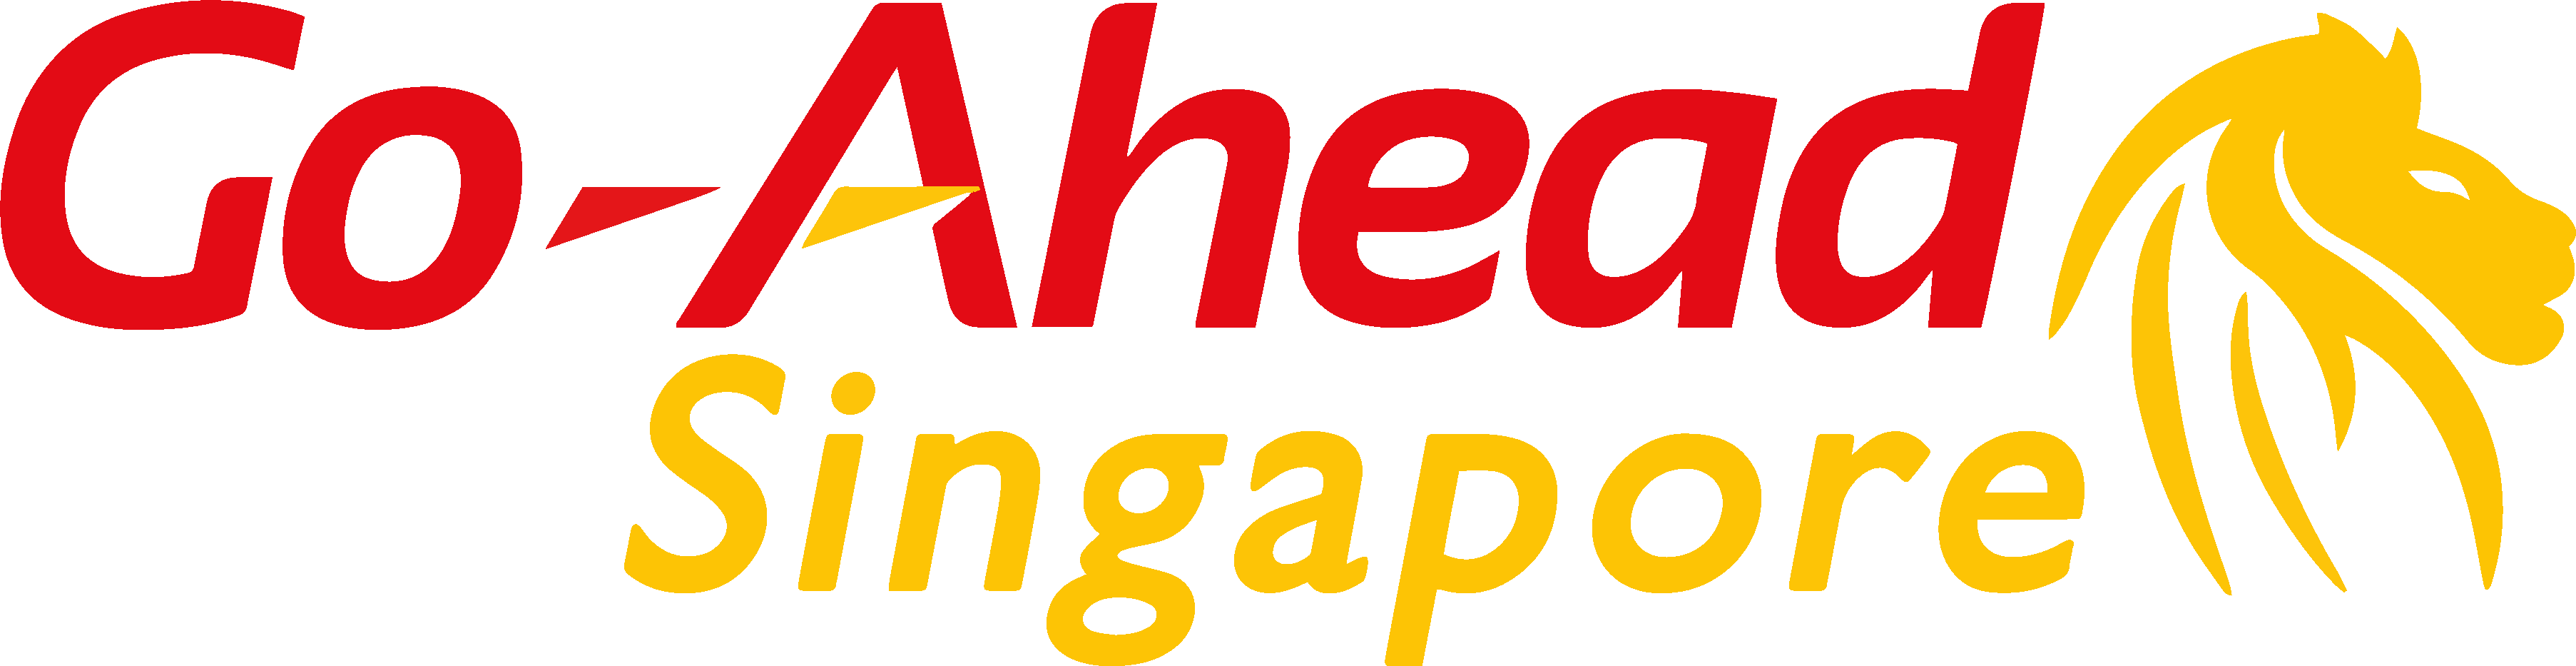 GO-AHEAD SINGAPORE LOGO (TRANSPARENT)